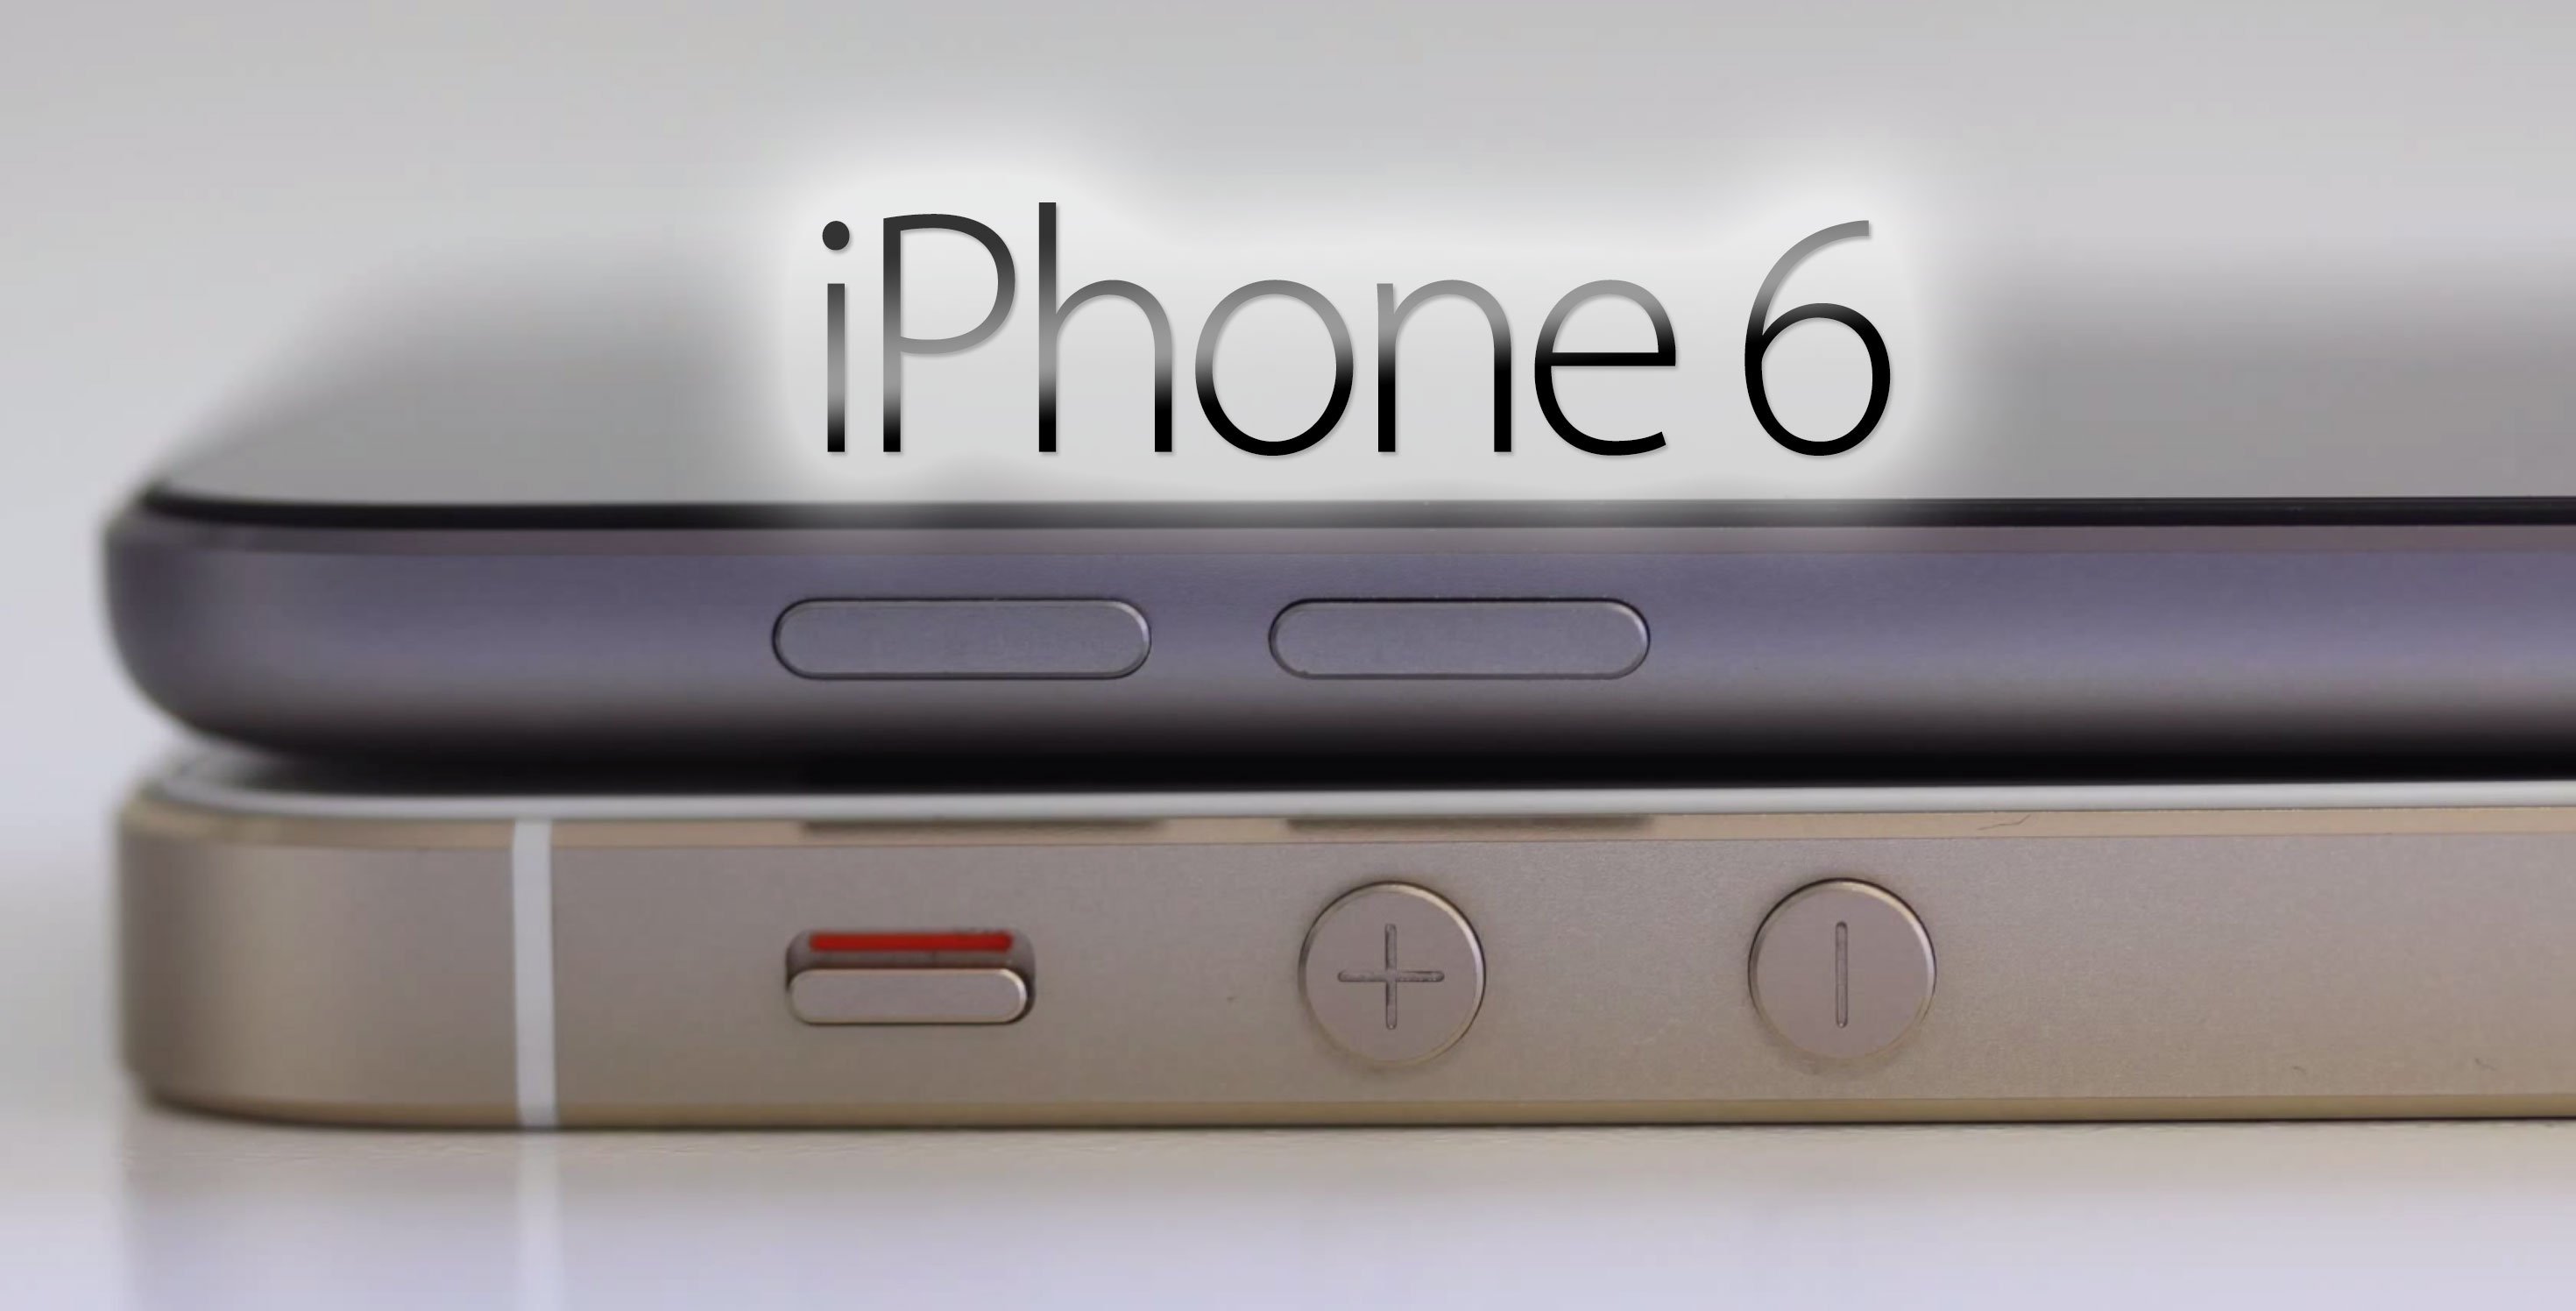 iPhone 6 kommt früher als erwartet - 4,7" iPhone 6 im August, 5,5" iPhone im September? 9